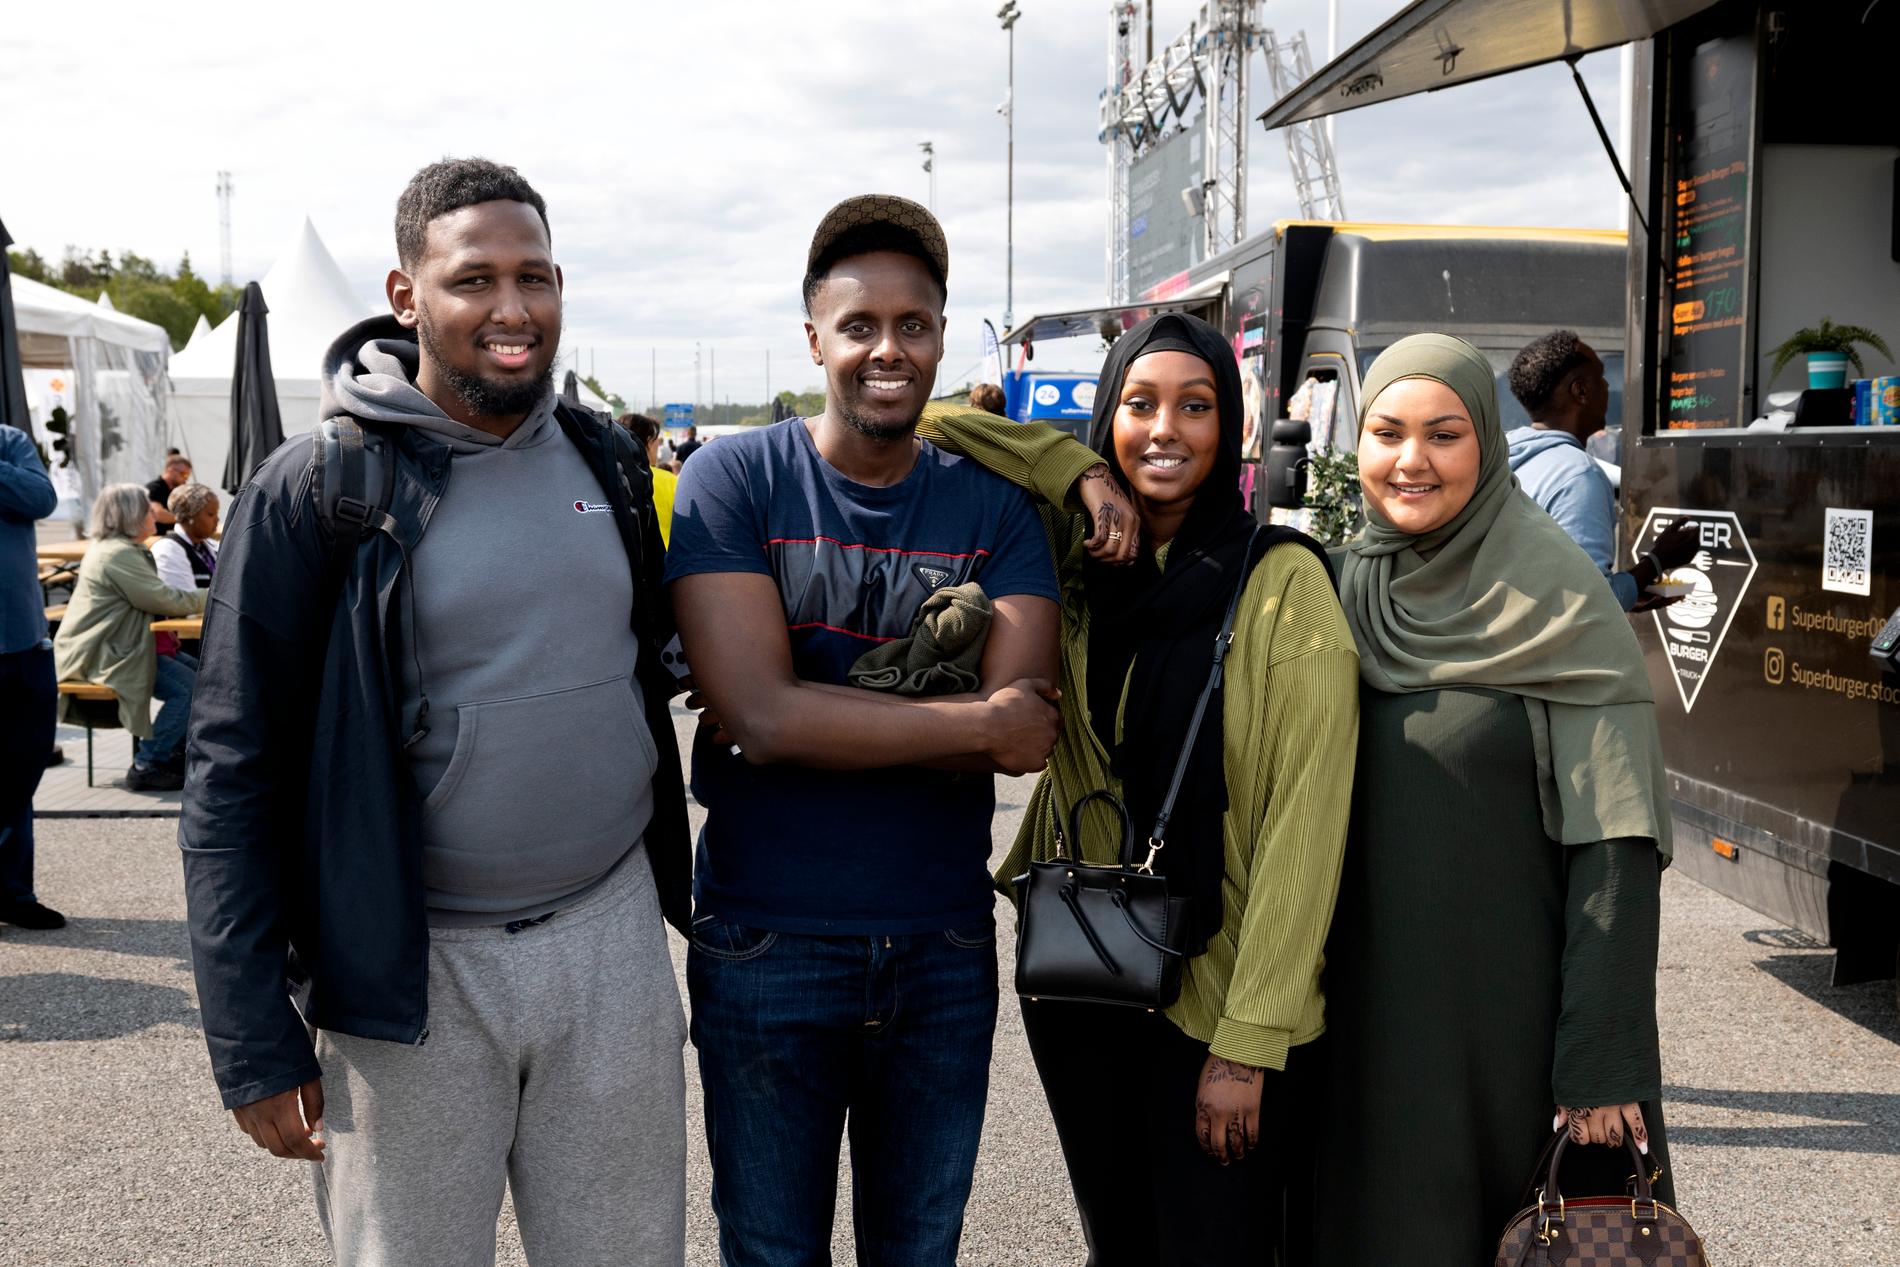 De olika ungdomsföreningarna samarbetar med varandra i Järvaområdet. På bild syns Suhayb Ahmed, 23, från BK Bussenhus, Mohamed Gure, 24, från Atletico Rinkeby samt Someya och Amina från Tenstaflickorna. 